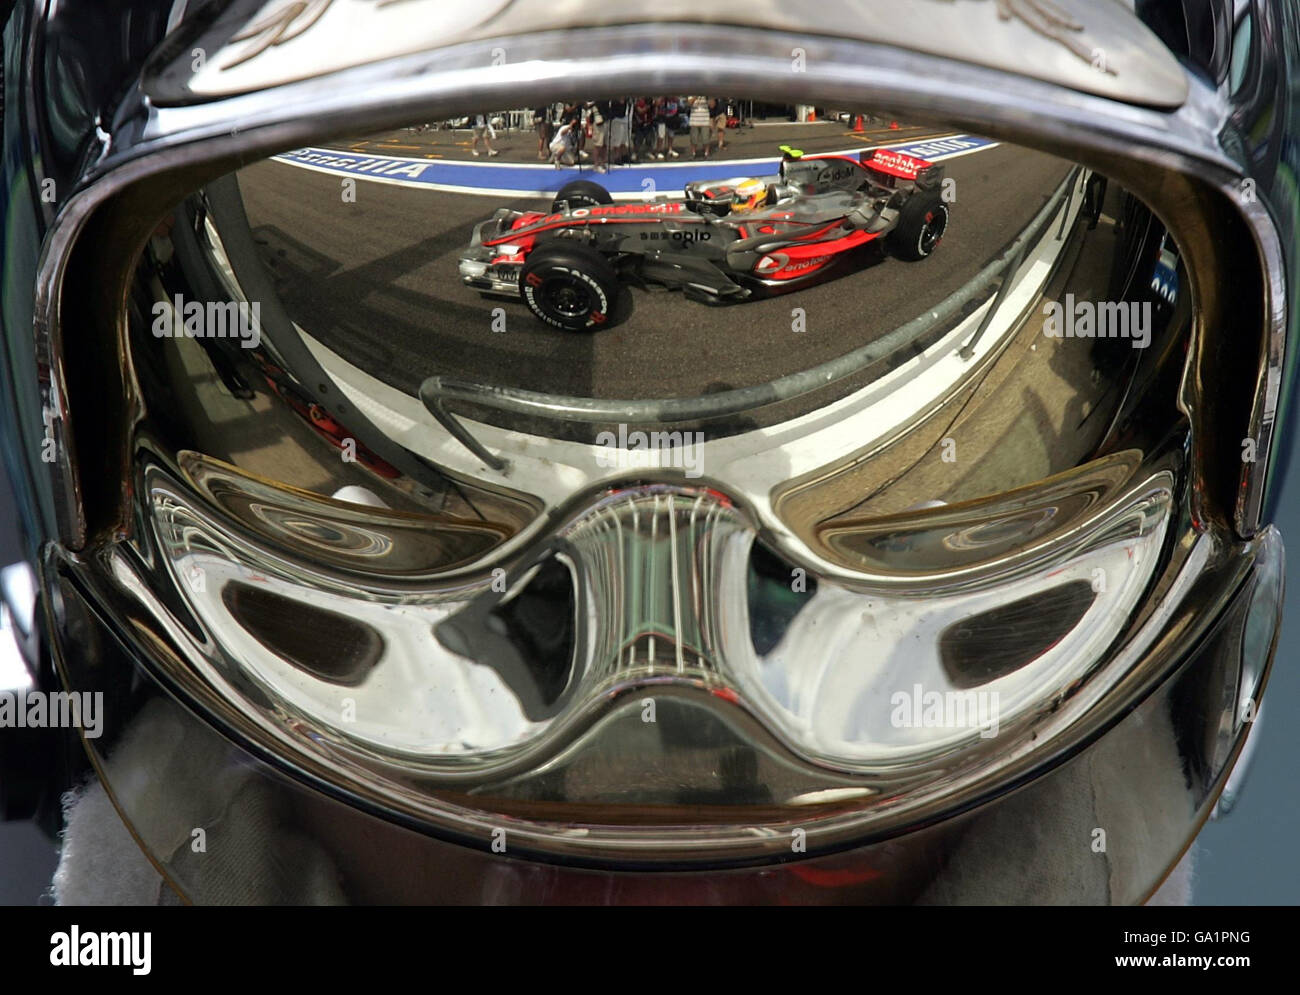 Visto nel riflesso di un incendio della visiera di marshall, Lewis Hamilton nella Vodafone McLaren Mercedes MP4/22 durante le qualifiche a Magny Cours, Nevers, Francia. Foto Stock